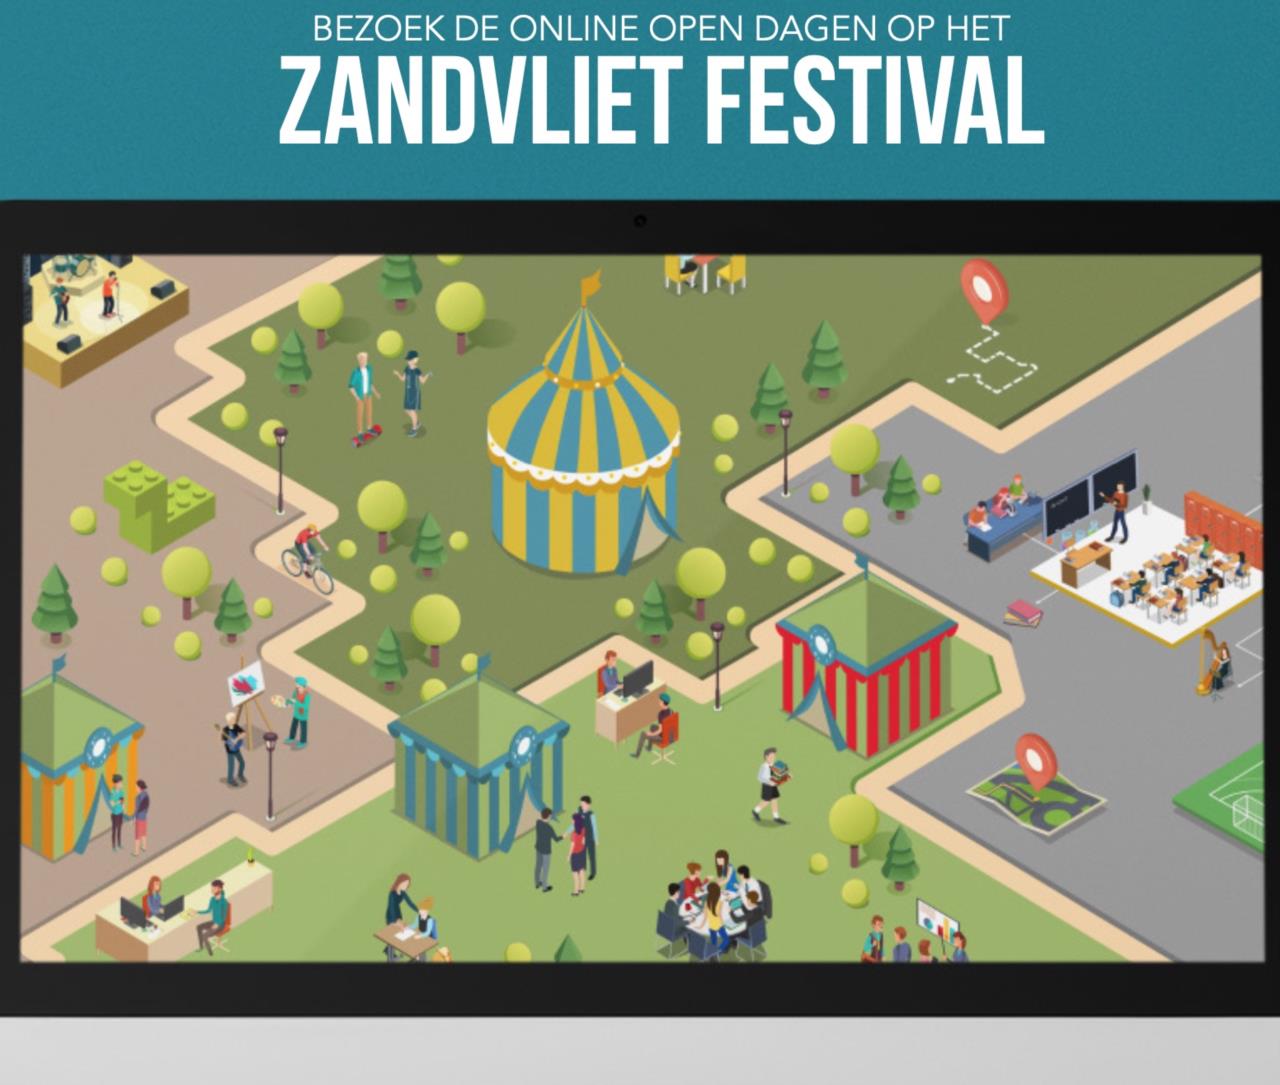 Zandvliet festival